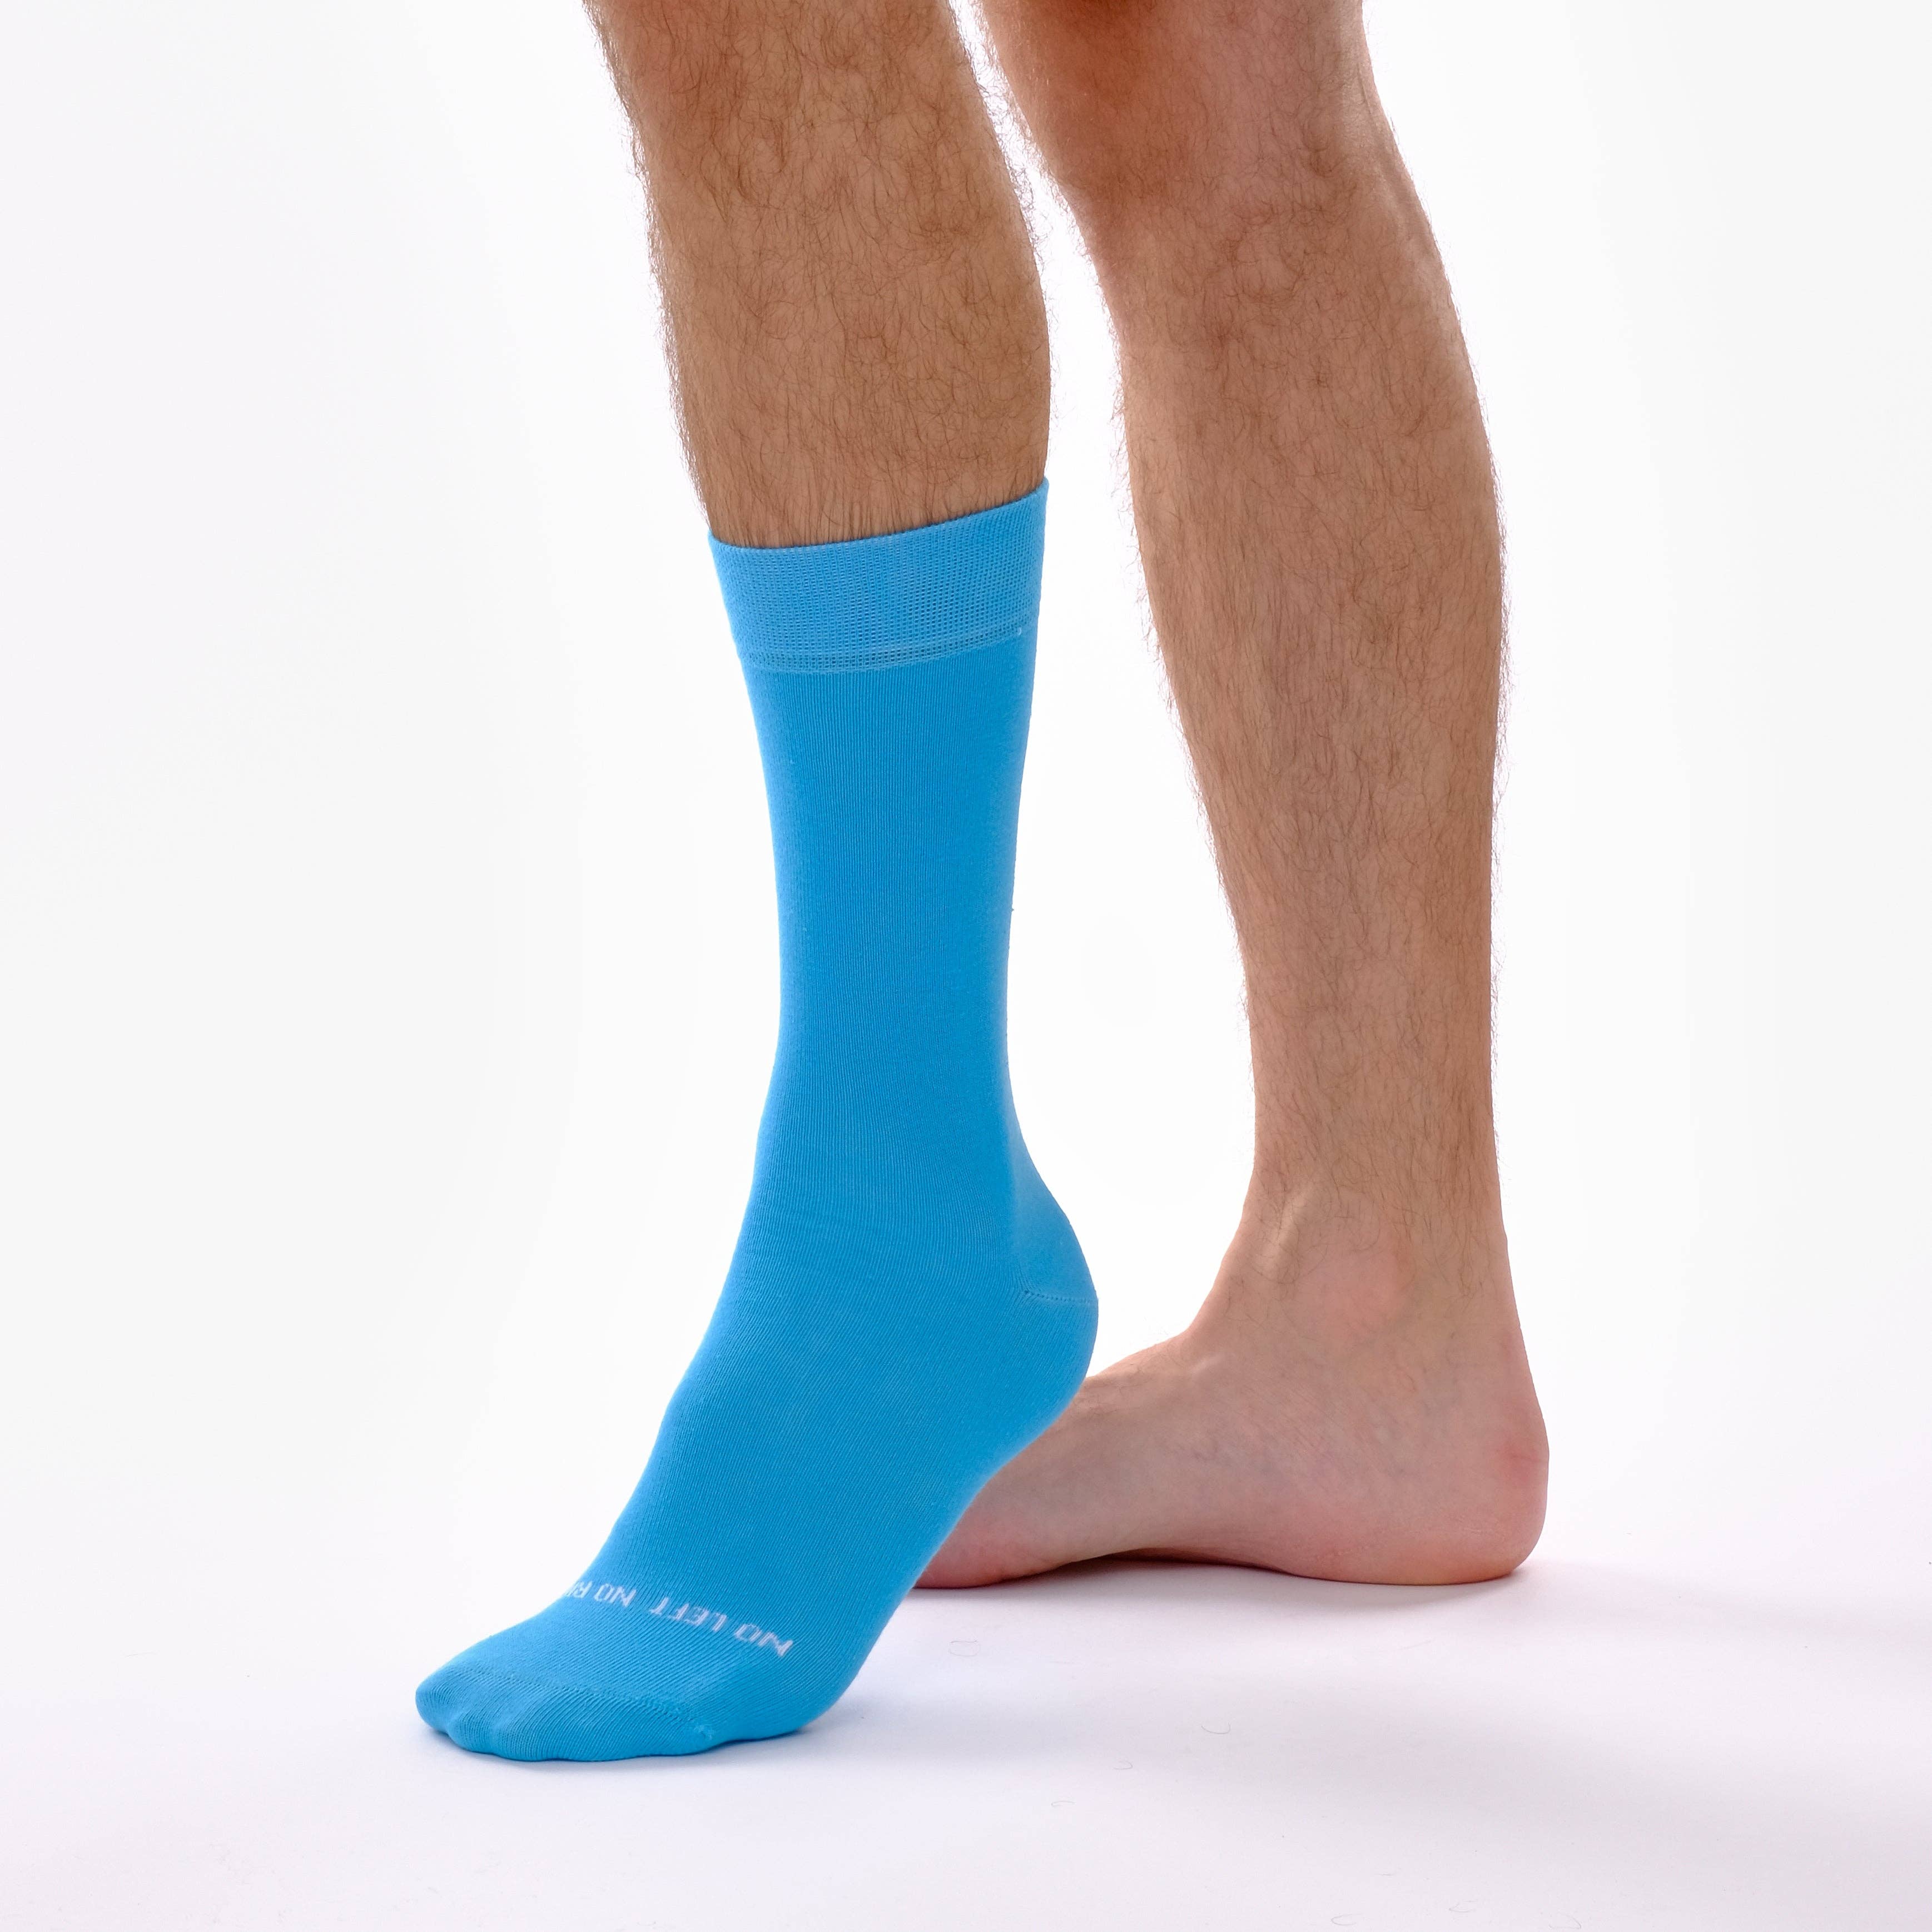 Yellow Single Sock – Onesck - Buy colourful socks